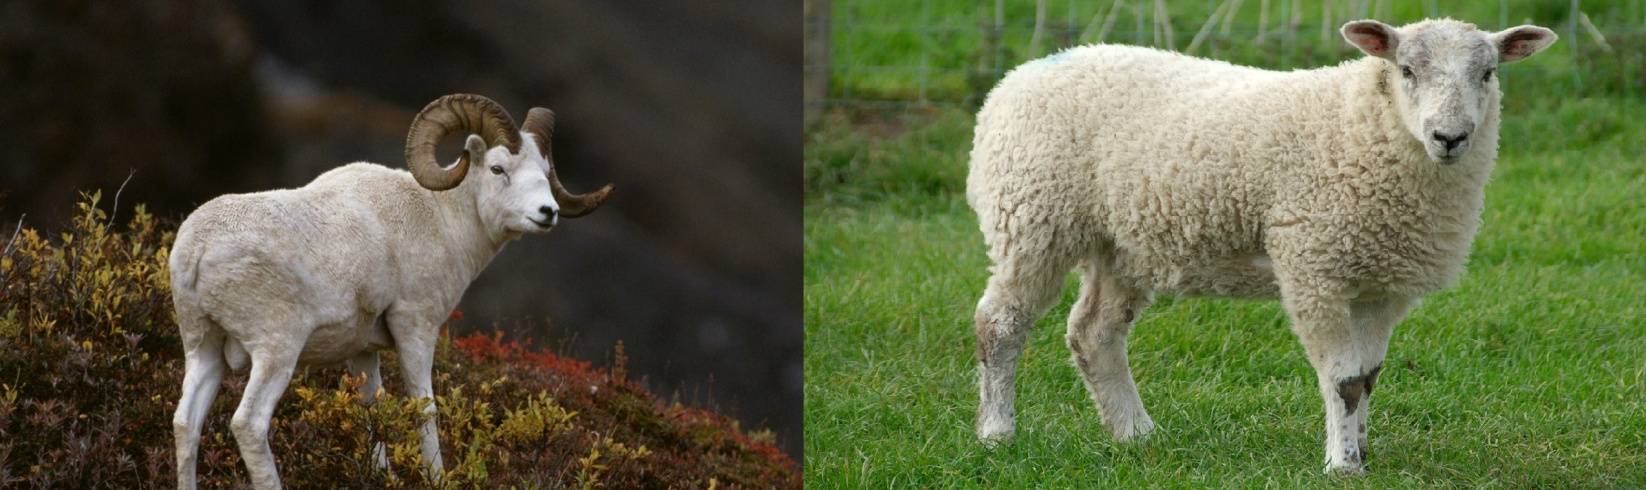 Разведение овец мясной породы технология